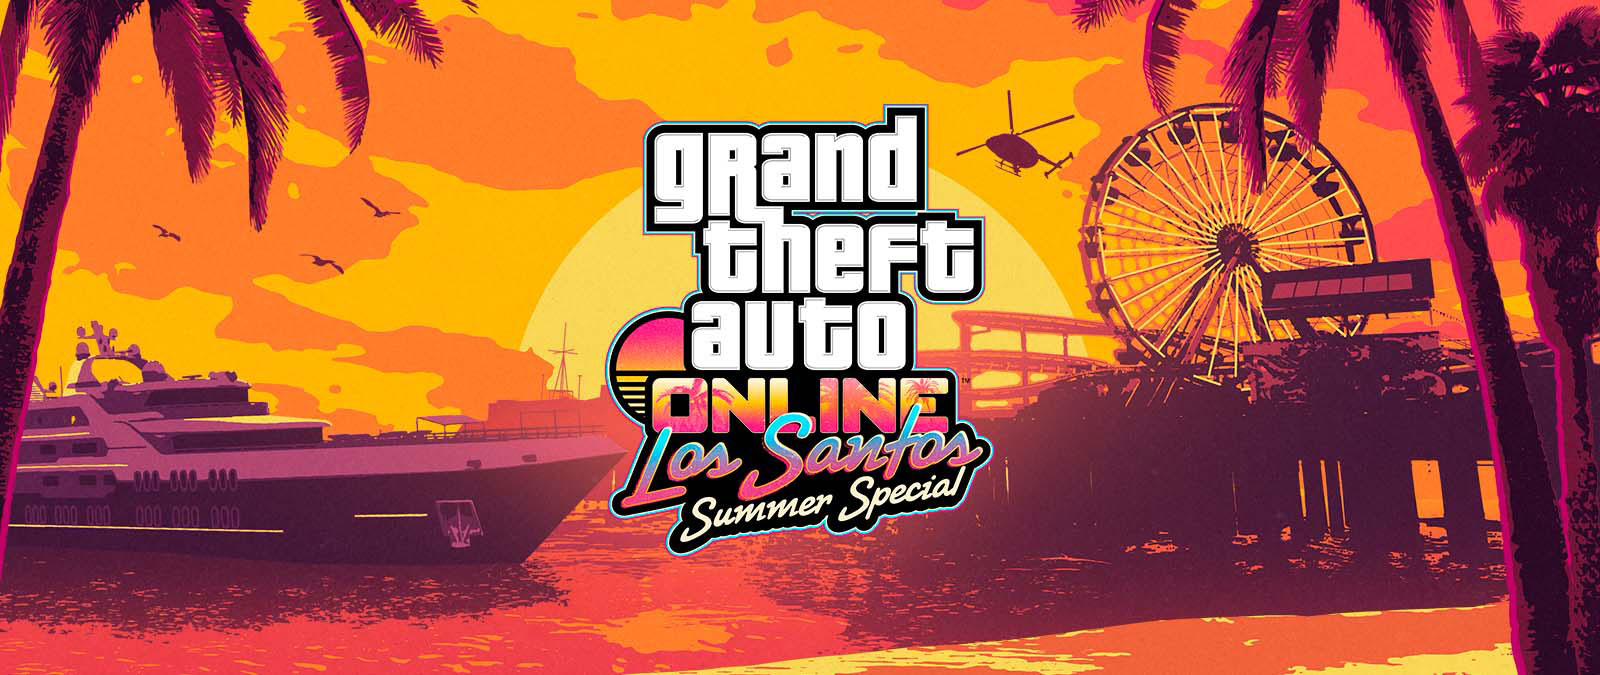 Grand Theft Auto Online Los Santos Summer Special. Uno yacht, una ruota panoramica e un elicottero al tramonto